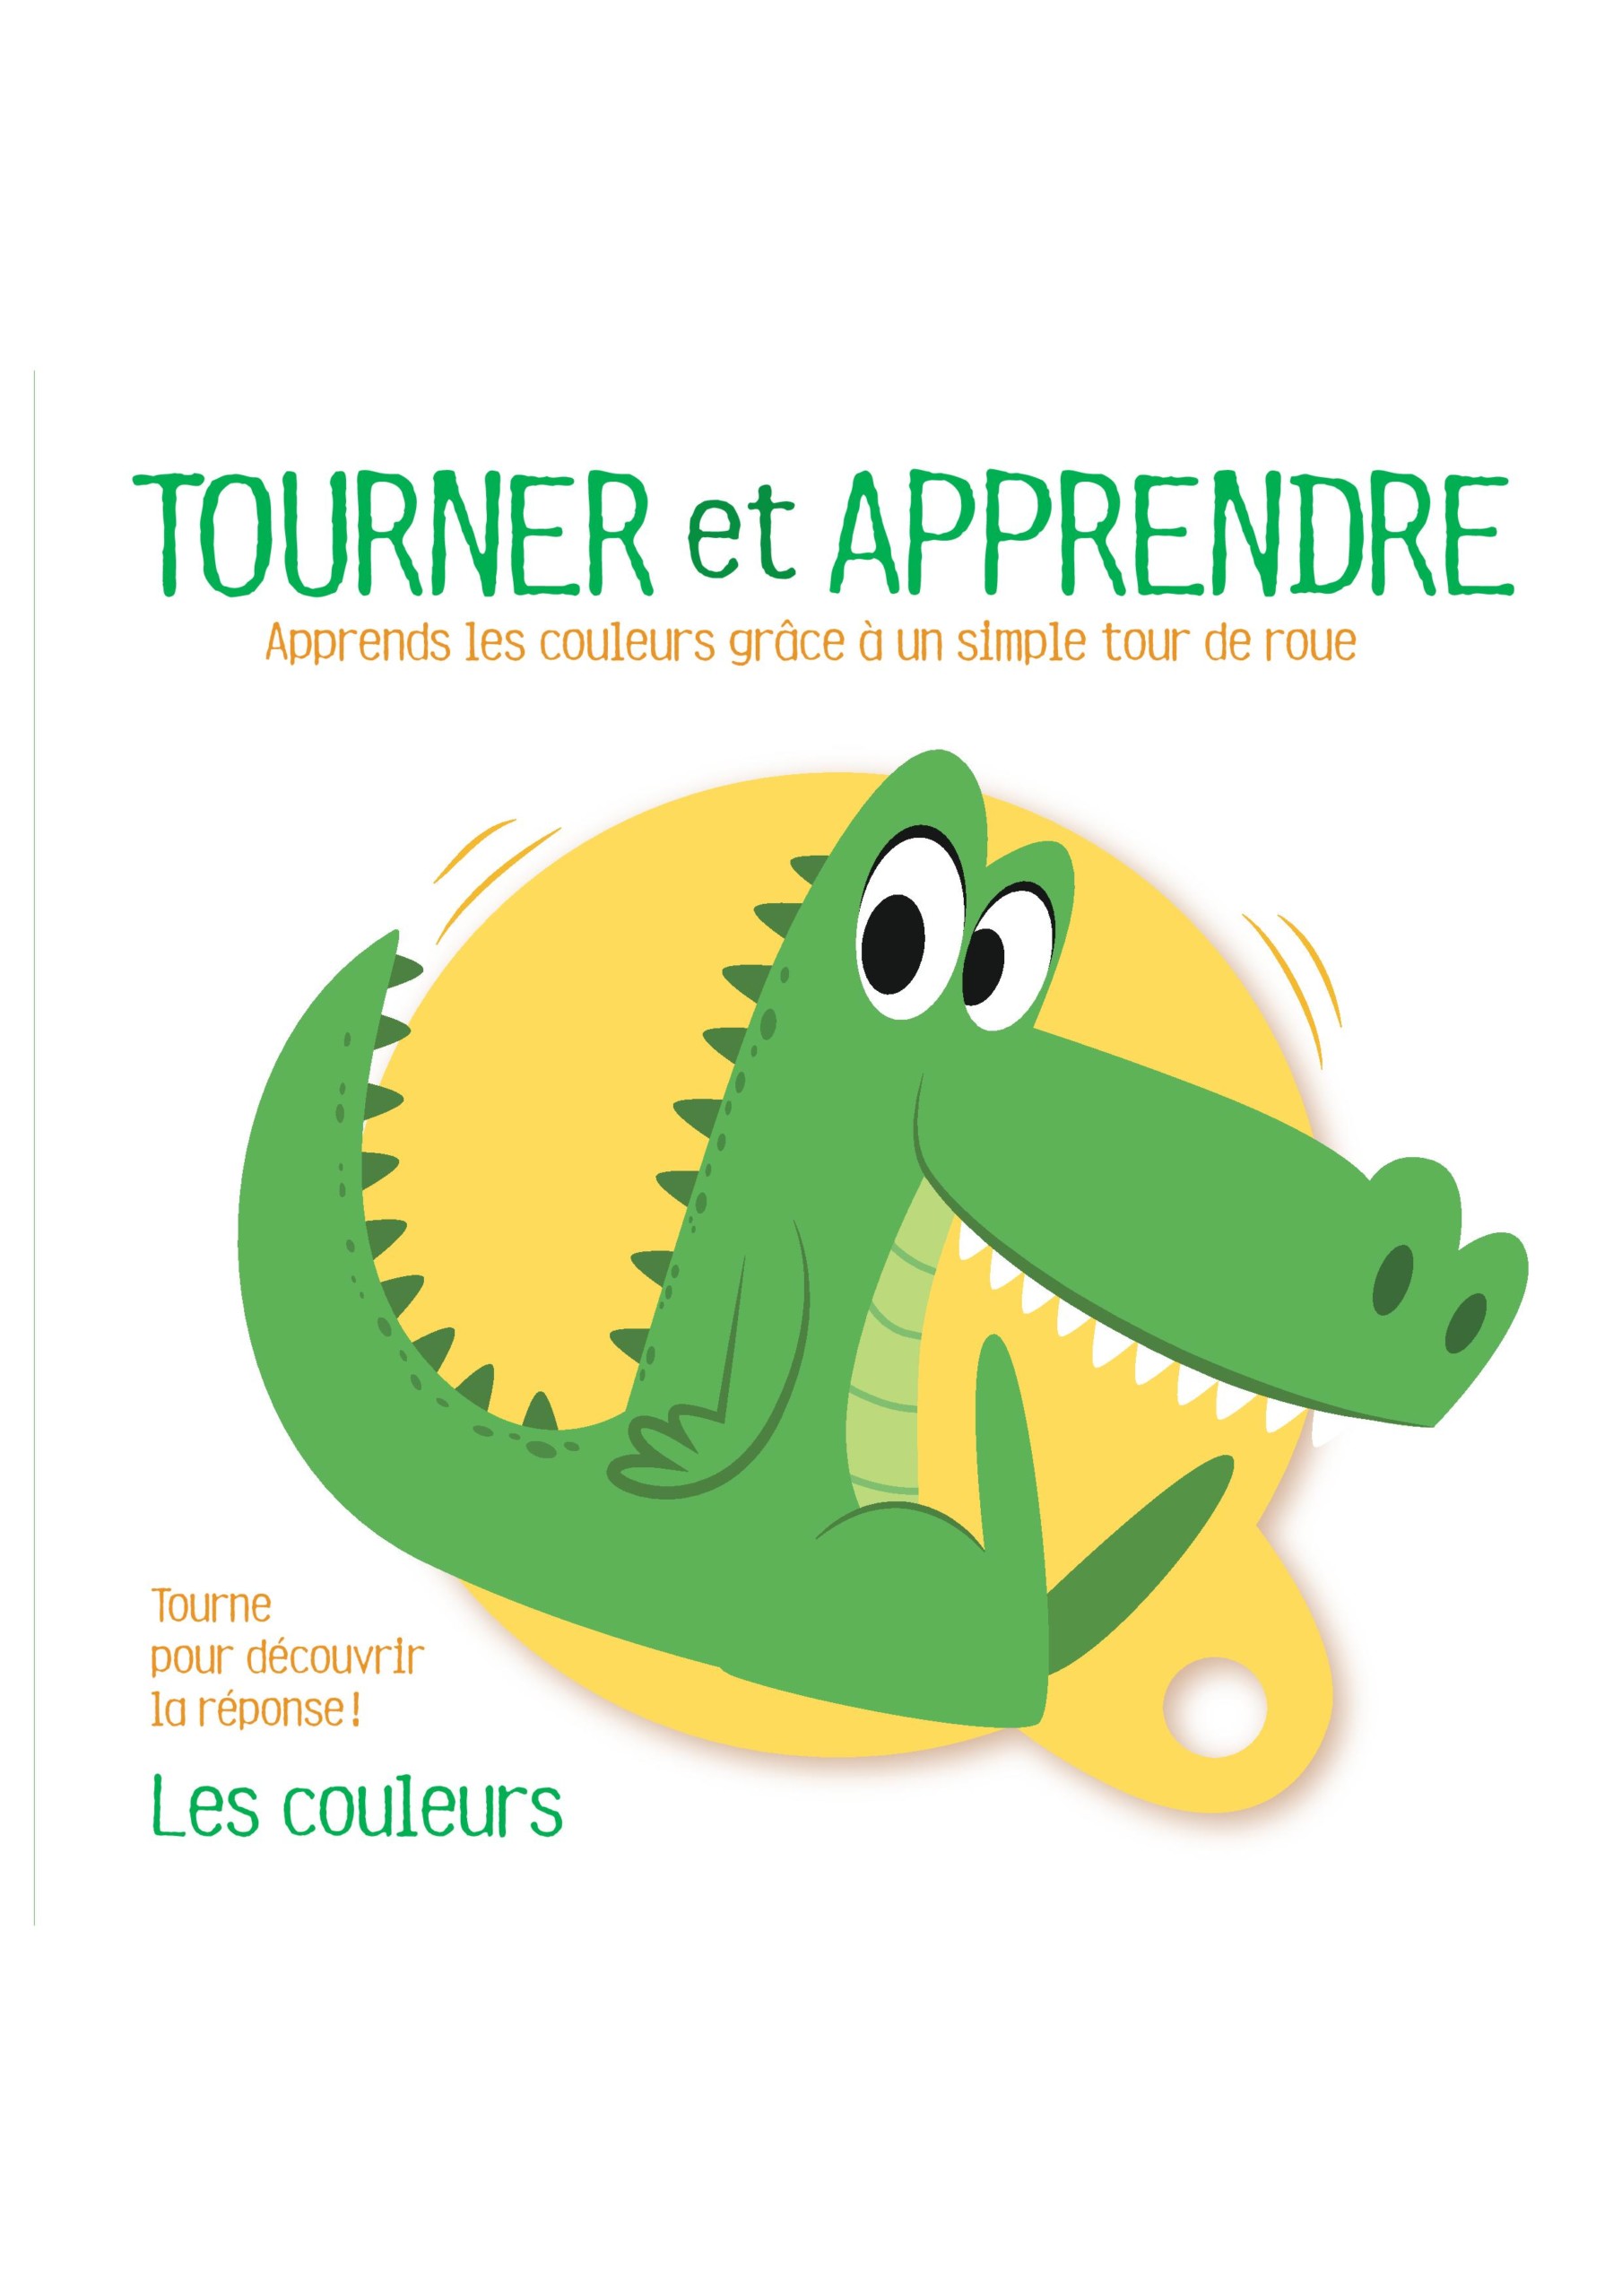 TOURNER ET APPRENDRE : LES COULEURS - Boutchou